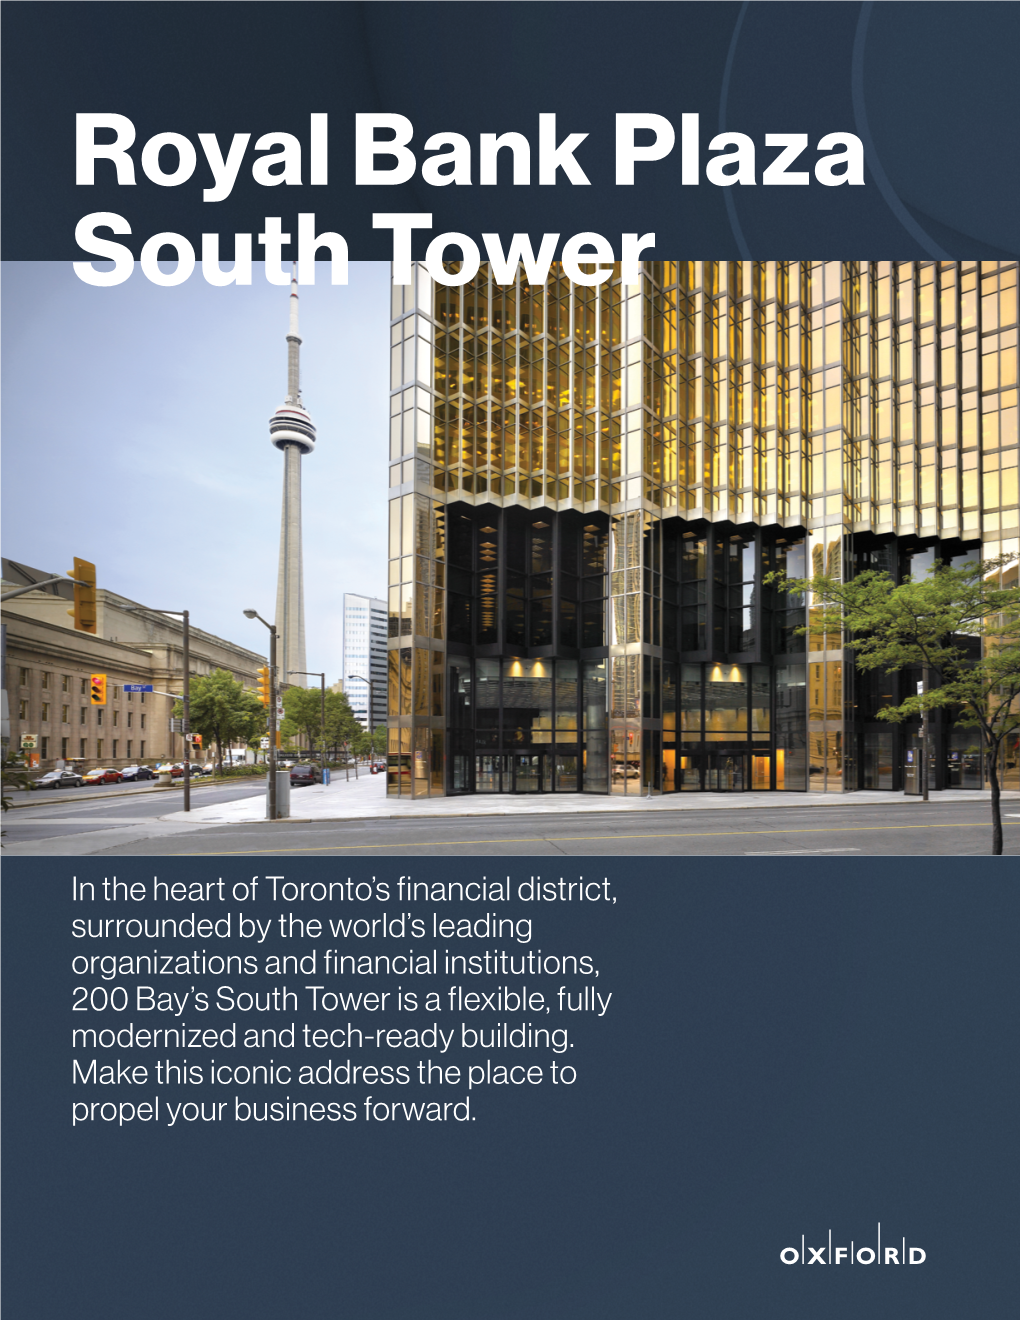 Royal Bank Plaza South Tower